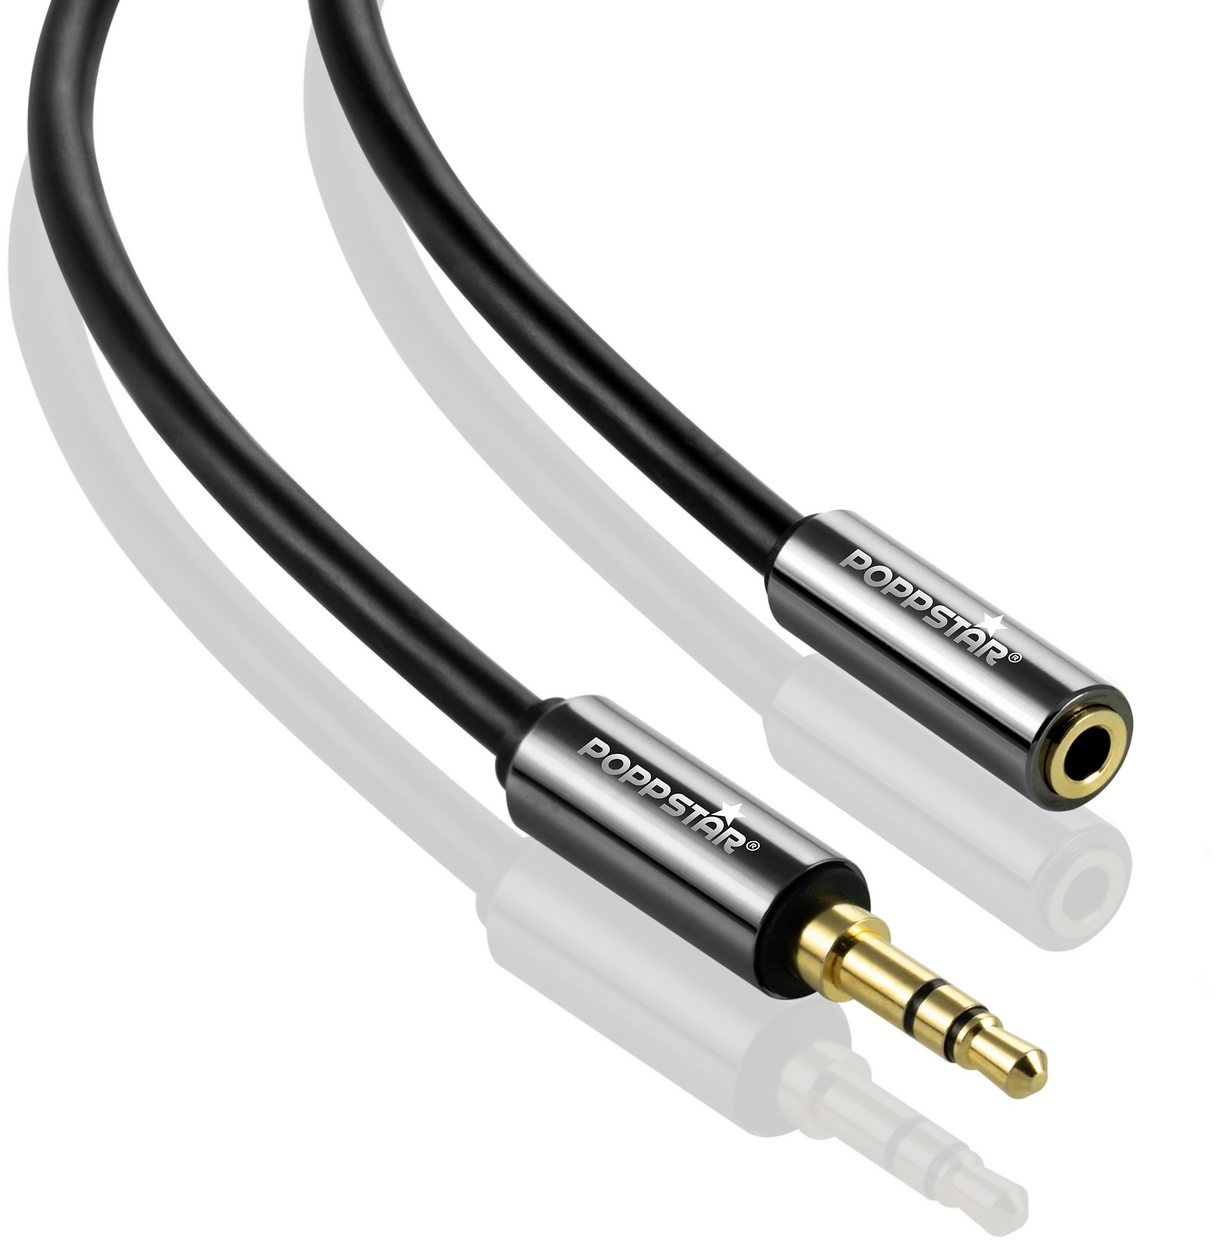 Poppstar Audio Kabel Klinke 3,5mm Klinkenkabel Stecker auf Buchse Audio-Kabel, 3,5-mm-Klinke, 3,5-mm-Klinke (1500 cm), Verlängerungskabel für Kopfhörer Smartphone MP3-Player Kfz Autoradio